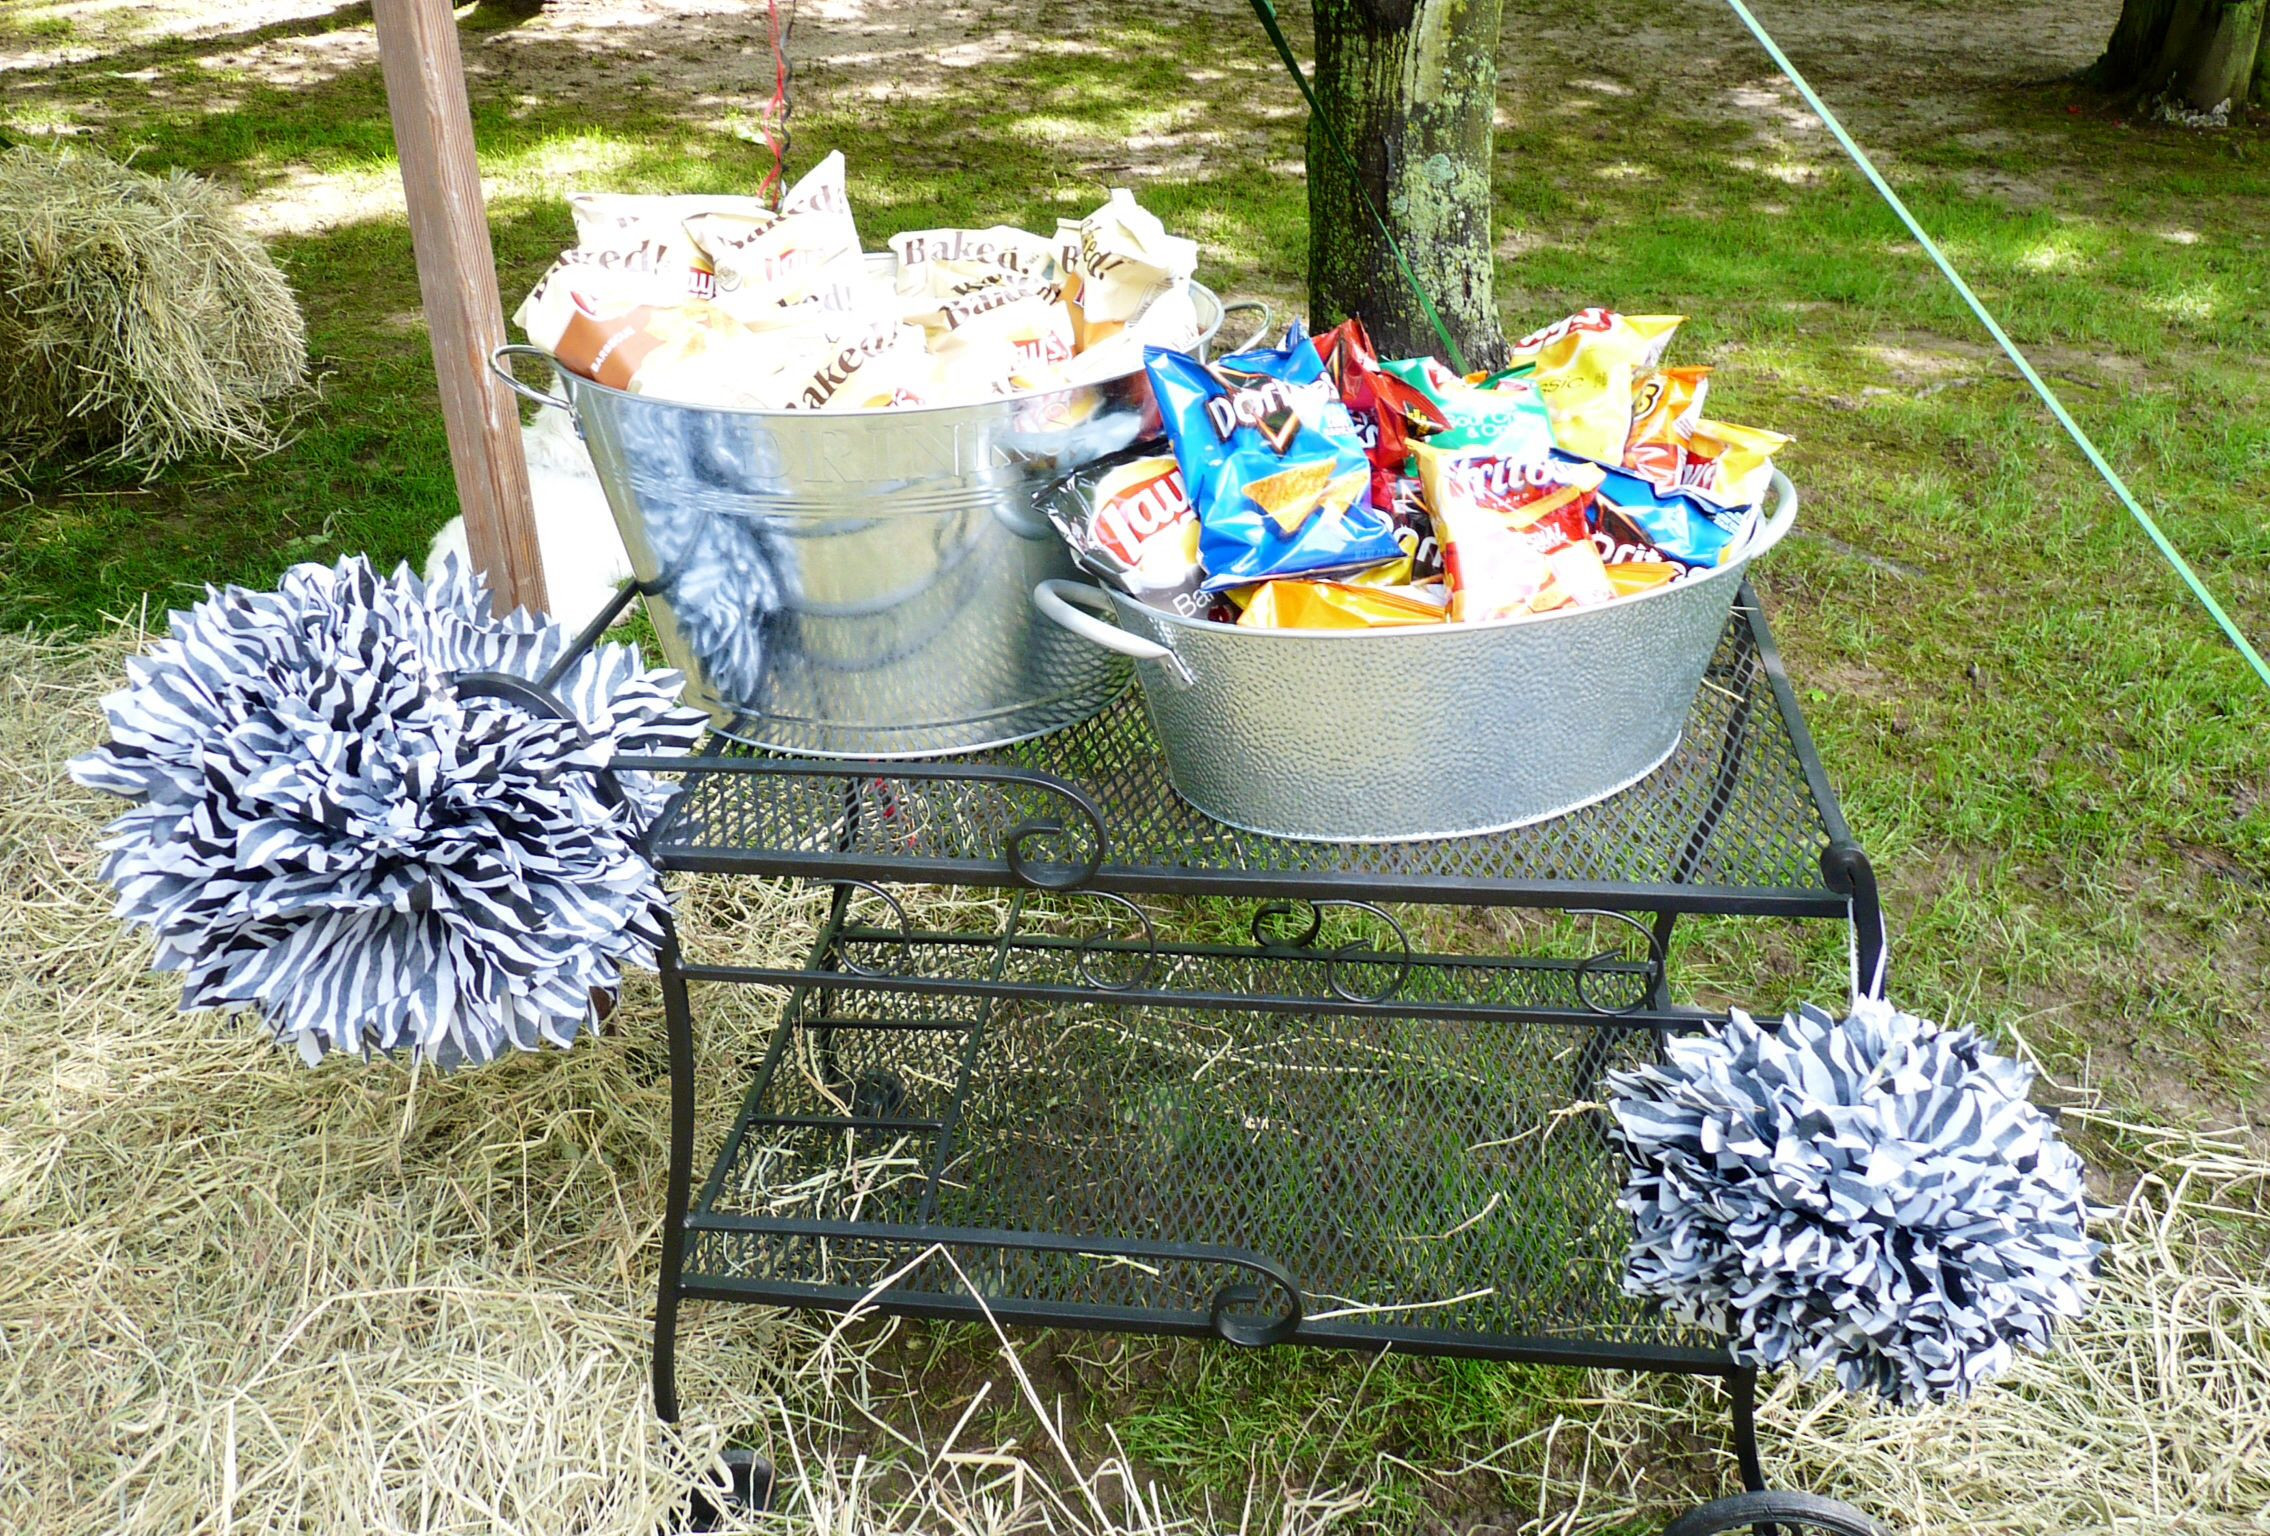 Outdoor High School Graduation Party Ideas
 Chip station for the outdoor graduation party